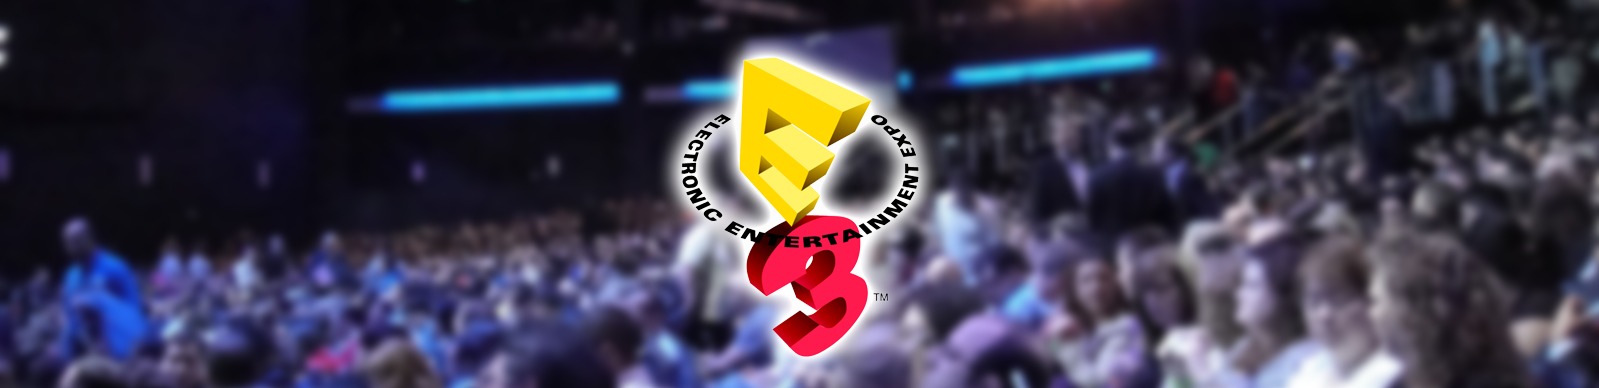 Versus Evil at E3